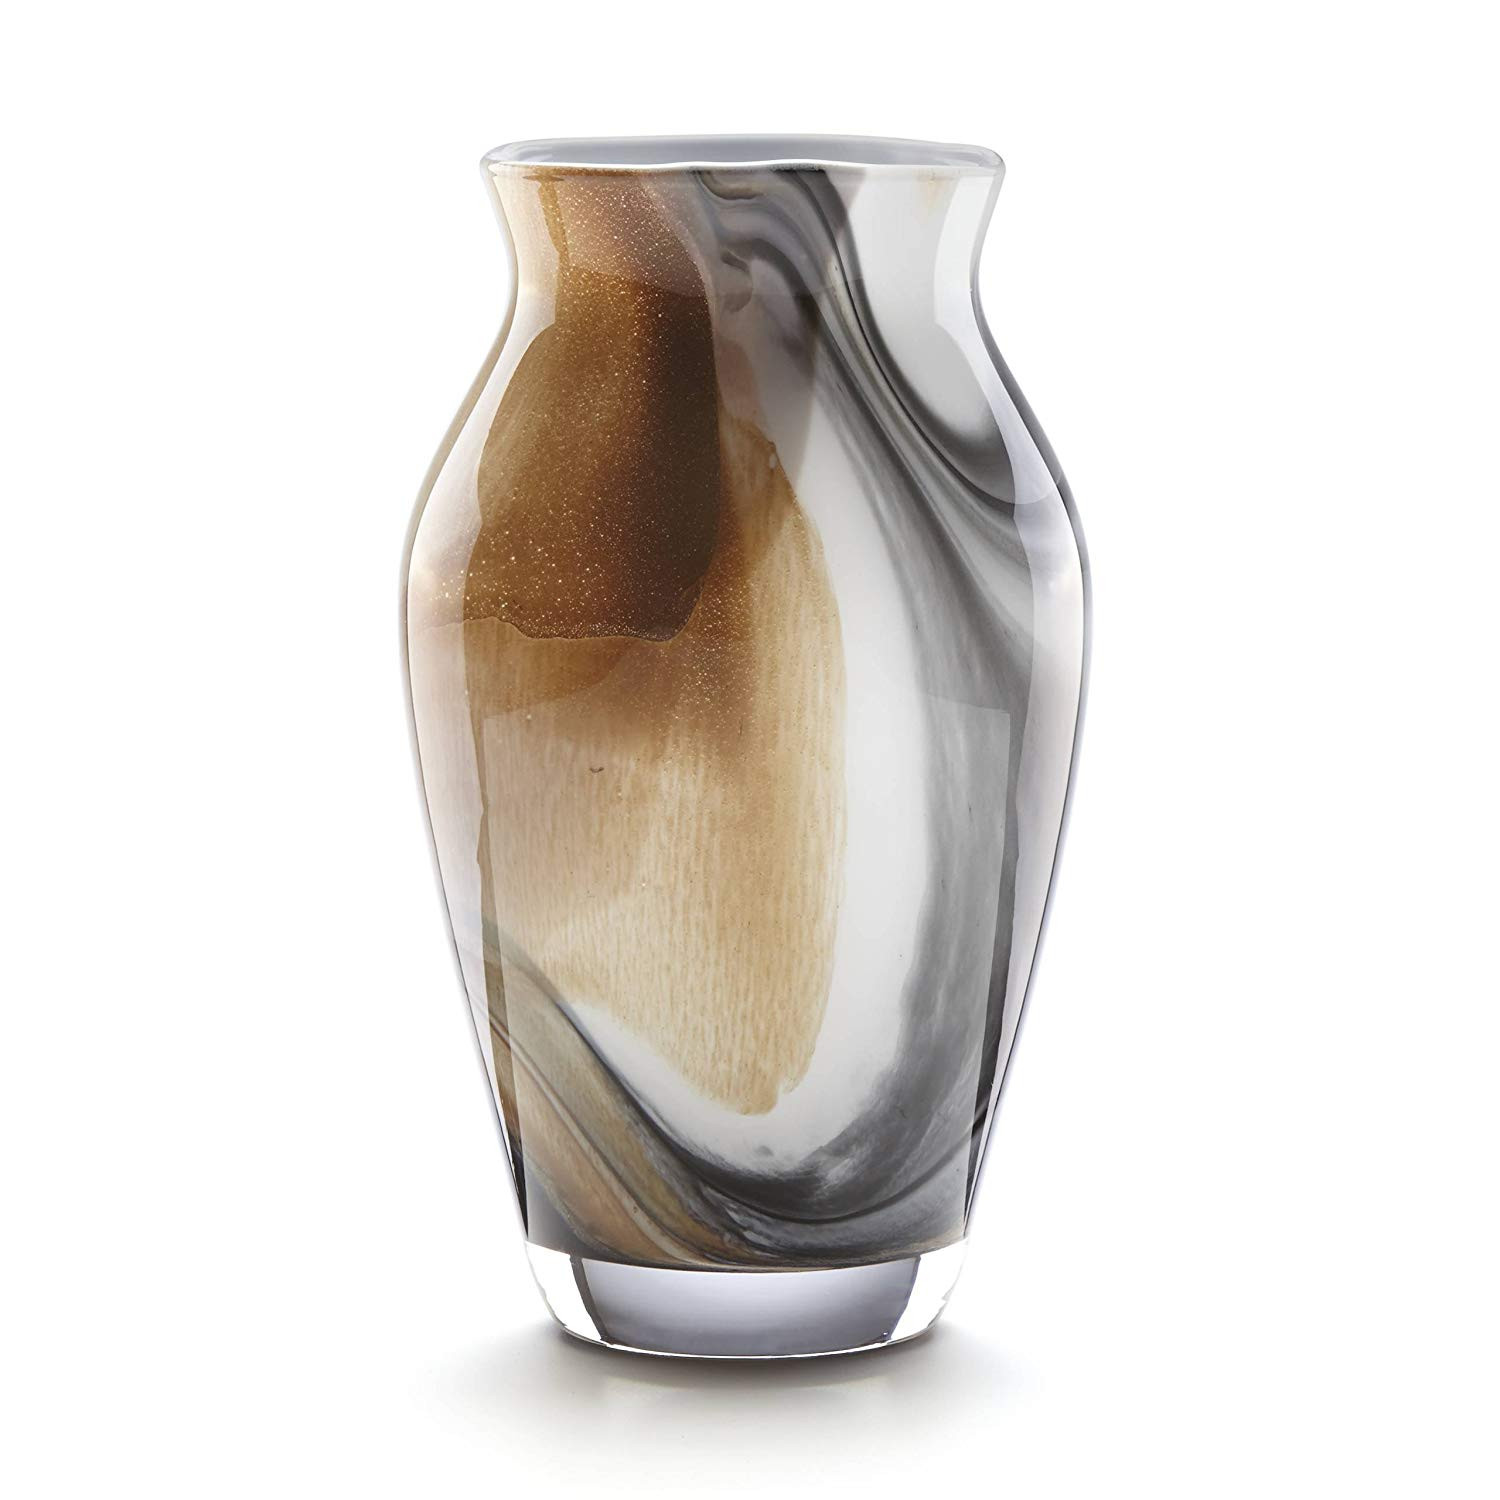 12 Nice orrefors Crystal Bud Vase 2024 free download orrefors crystal bud vase of amazon com lenox seaview sand tulip vase home kitchen throughout 81ejq3yhval sl1500